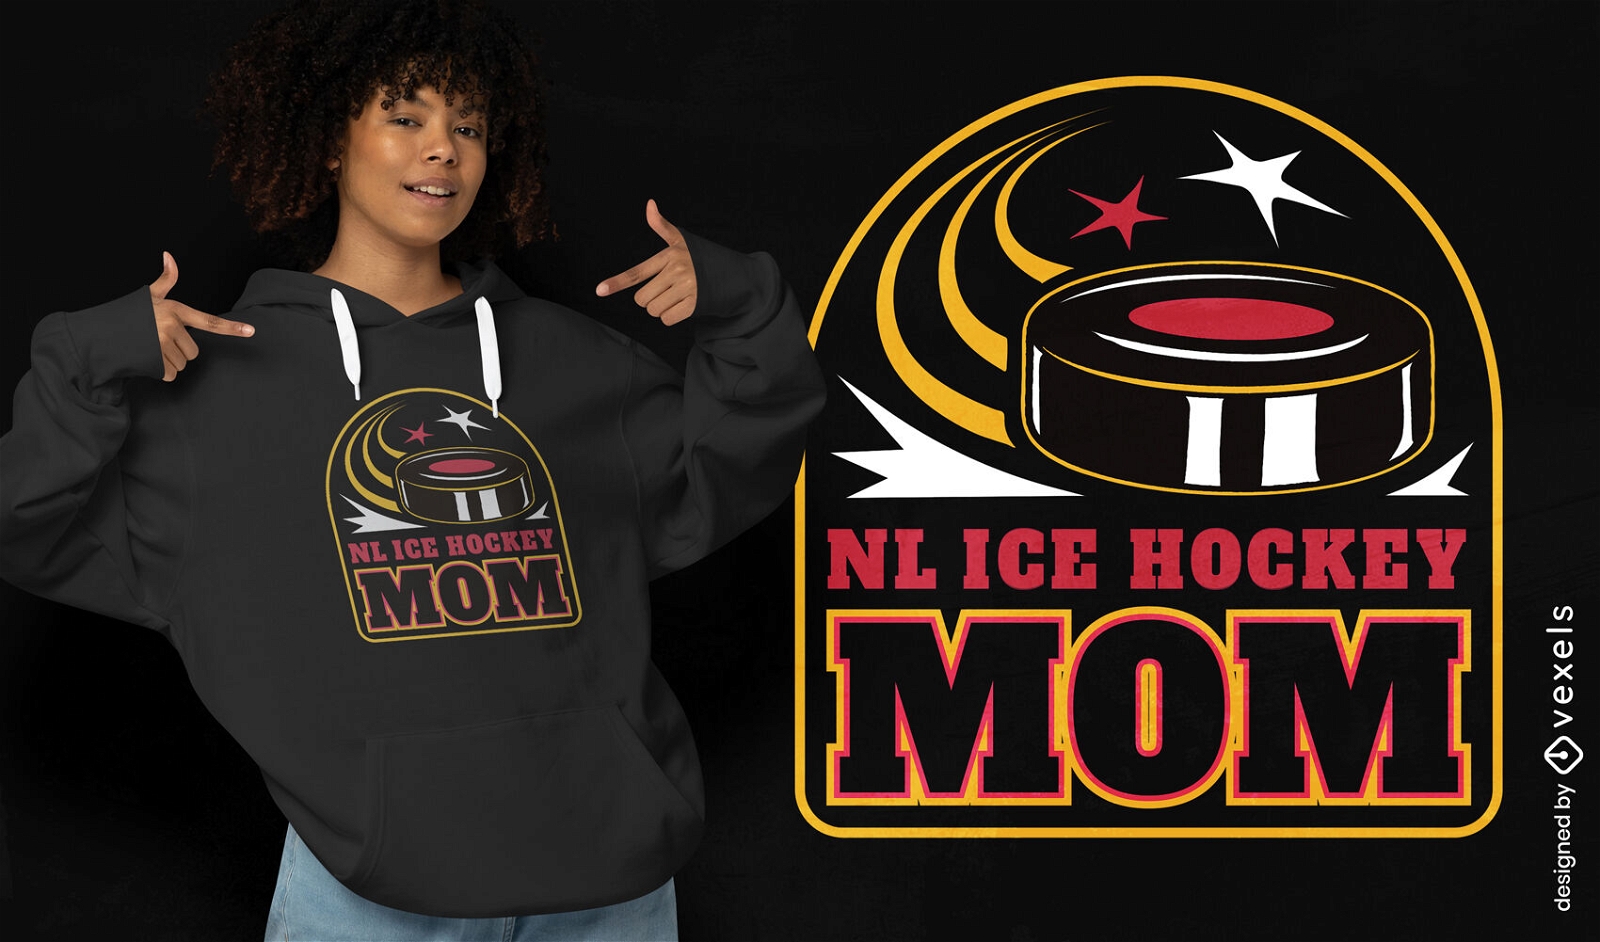 Diseño de camiseta de mamá de hockey sobre hielo de la nhl.